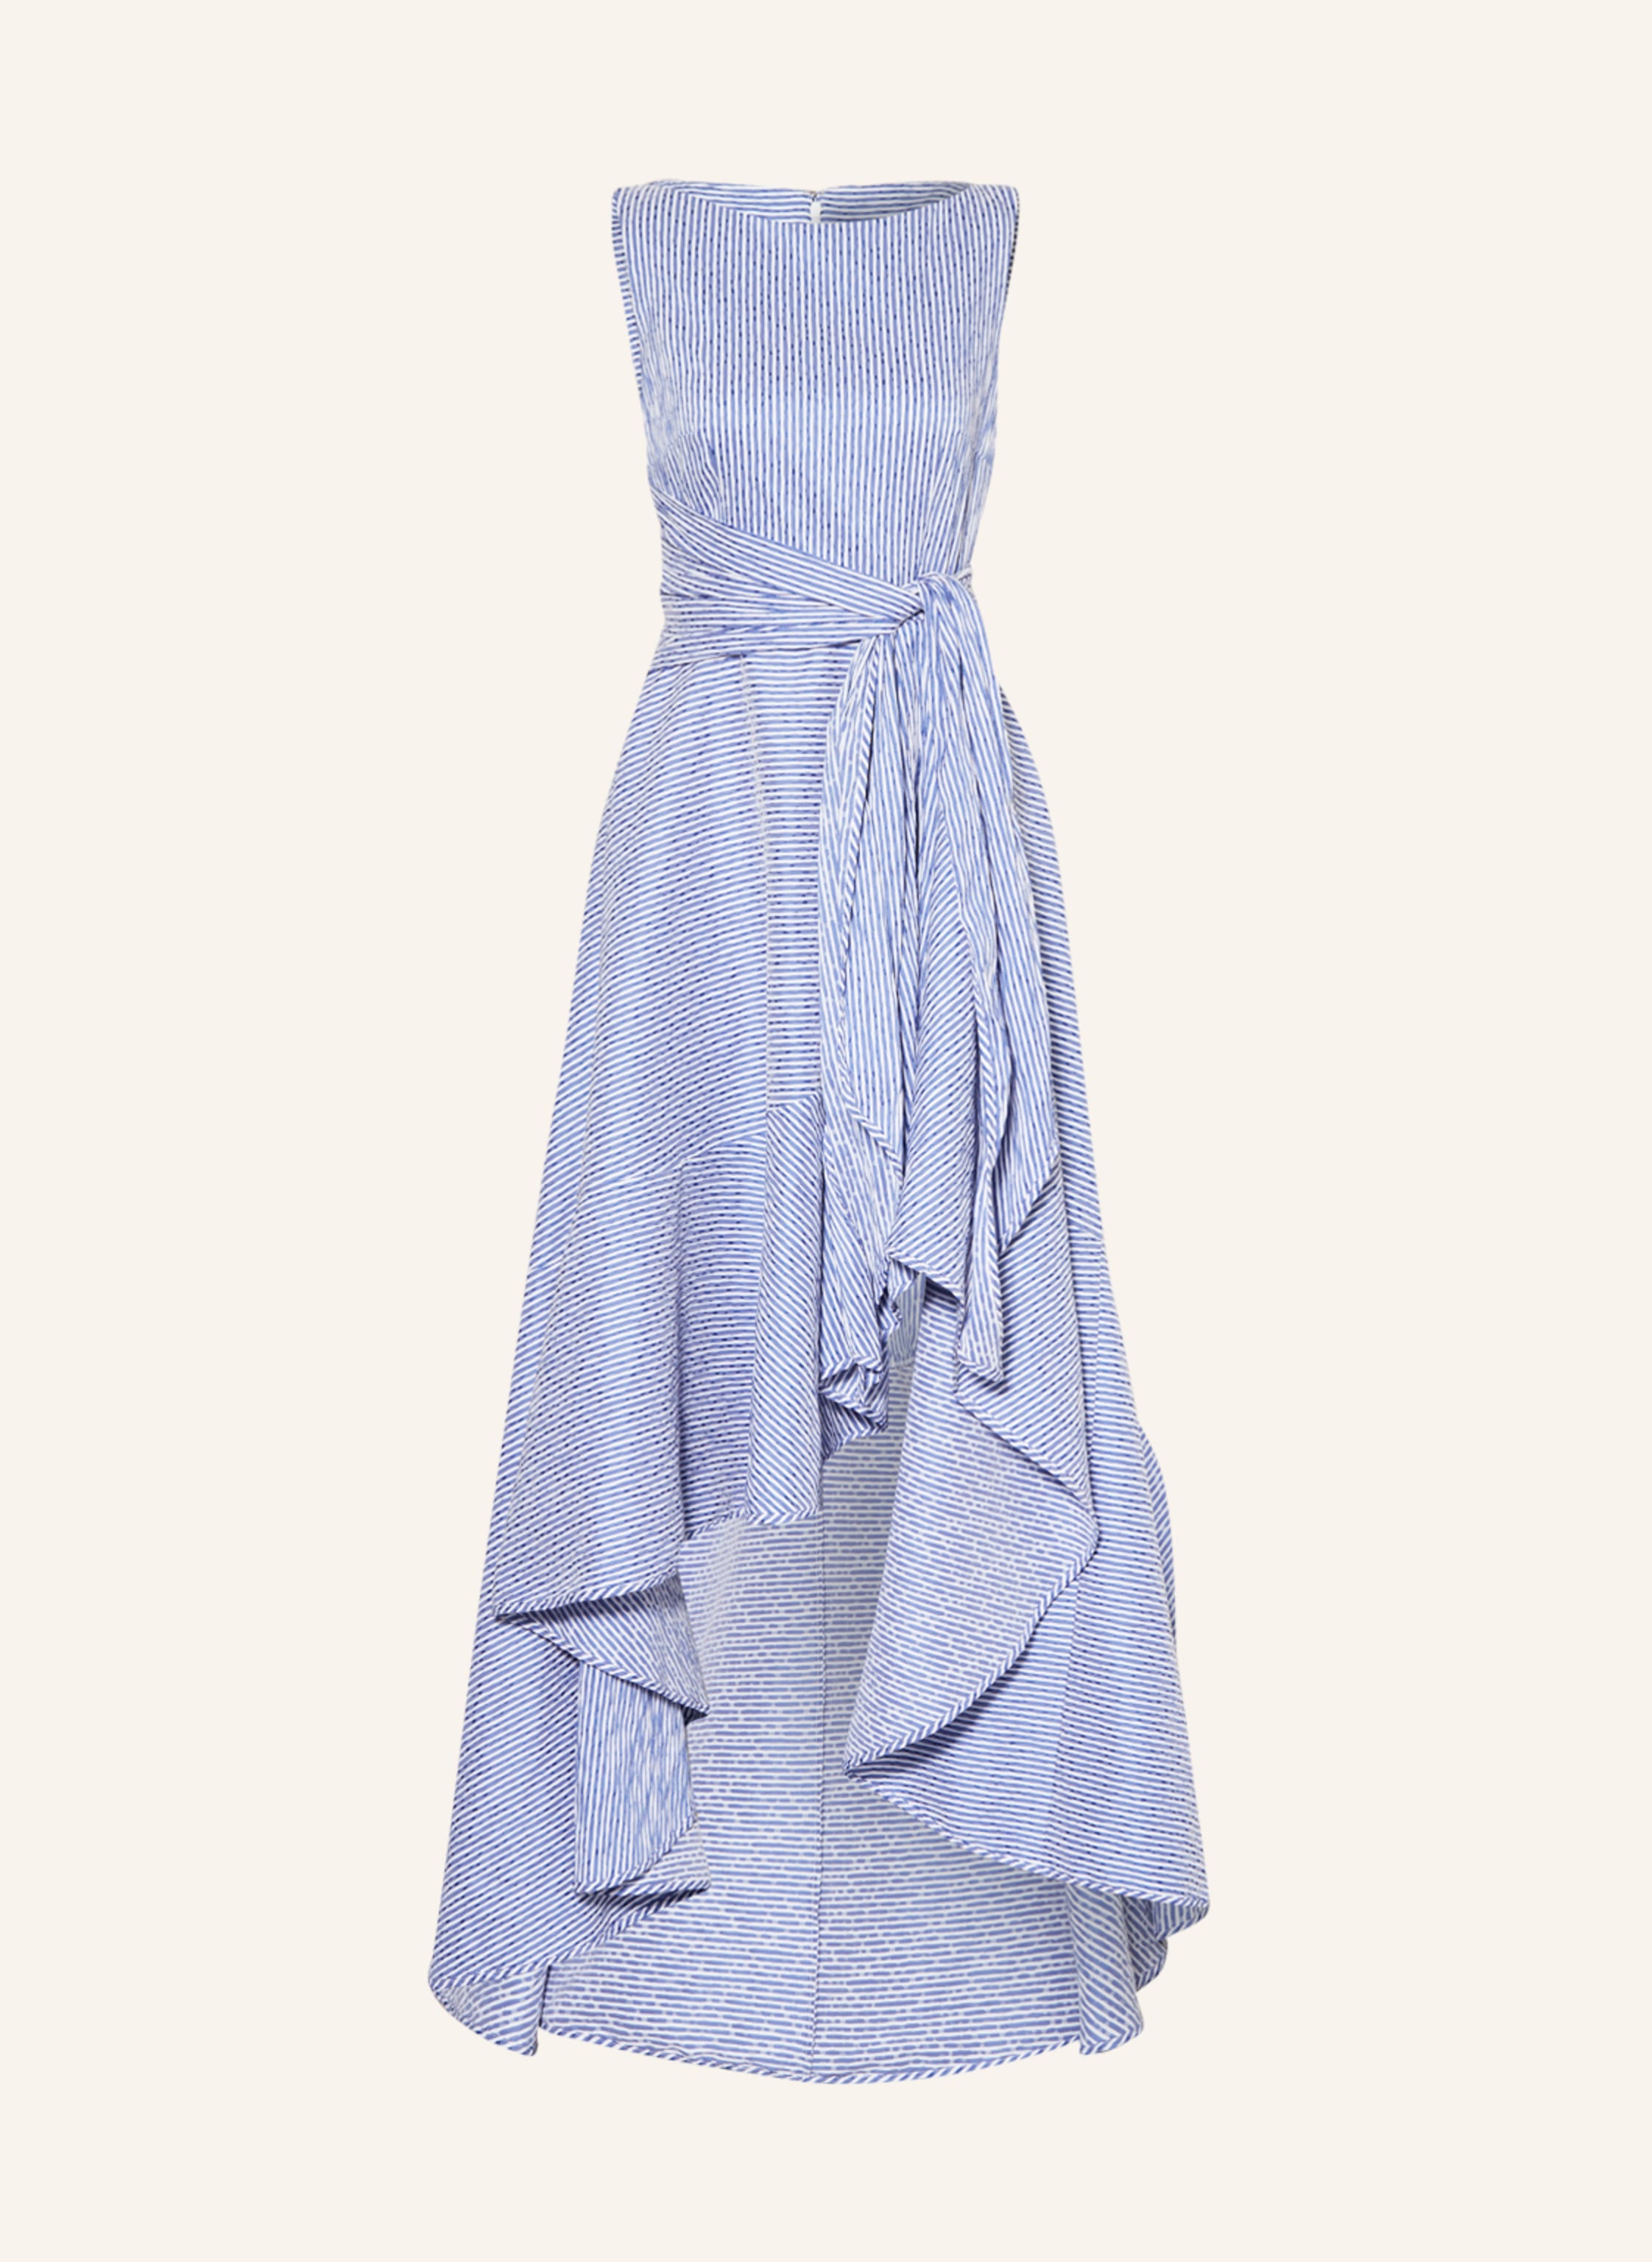 TALBOT RUNHOF Cocktail dress HOMERIE1 in white/ blue | Breuninger